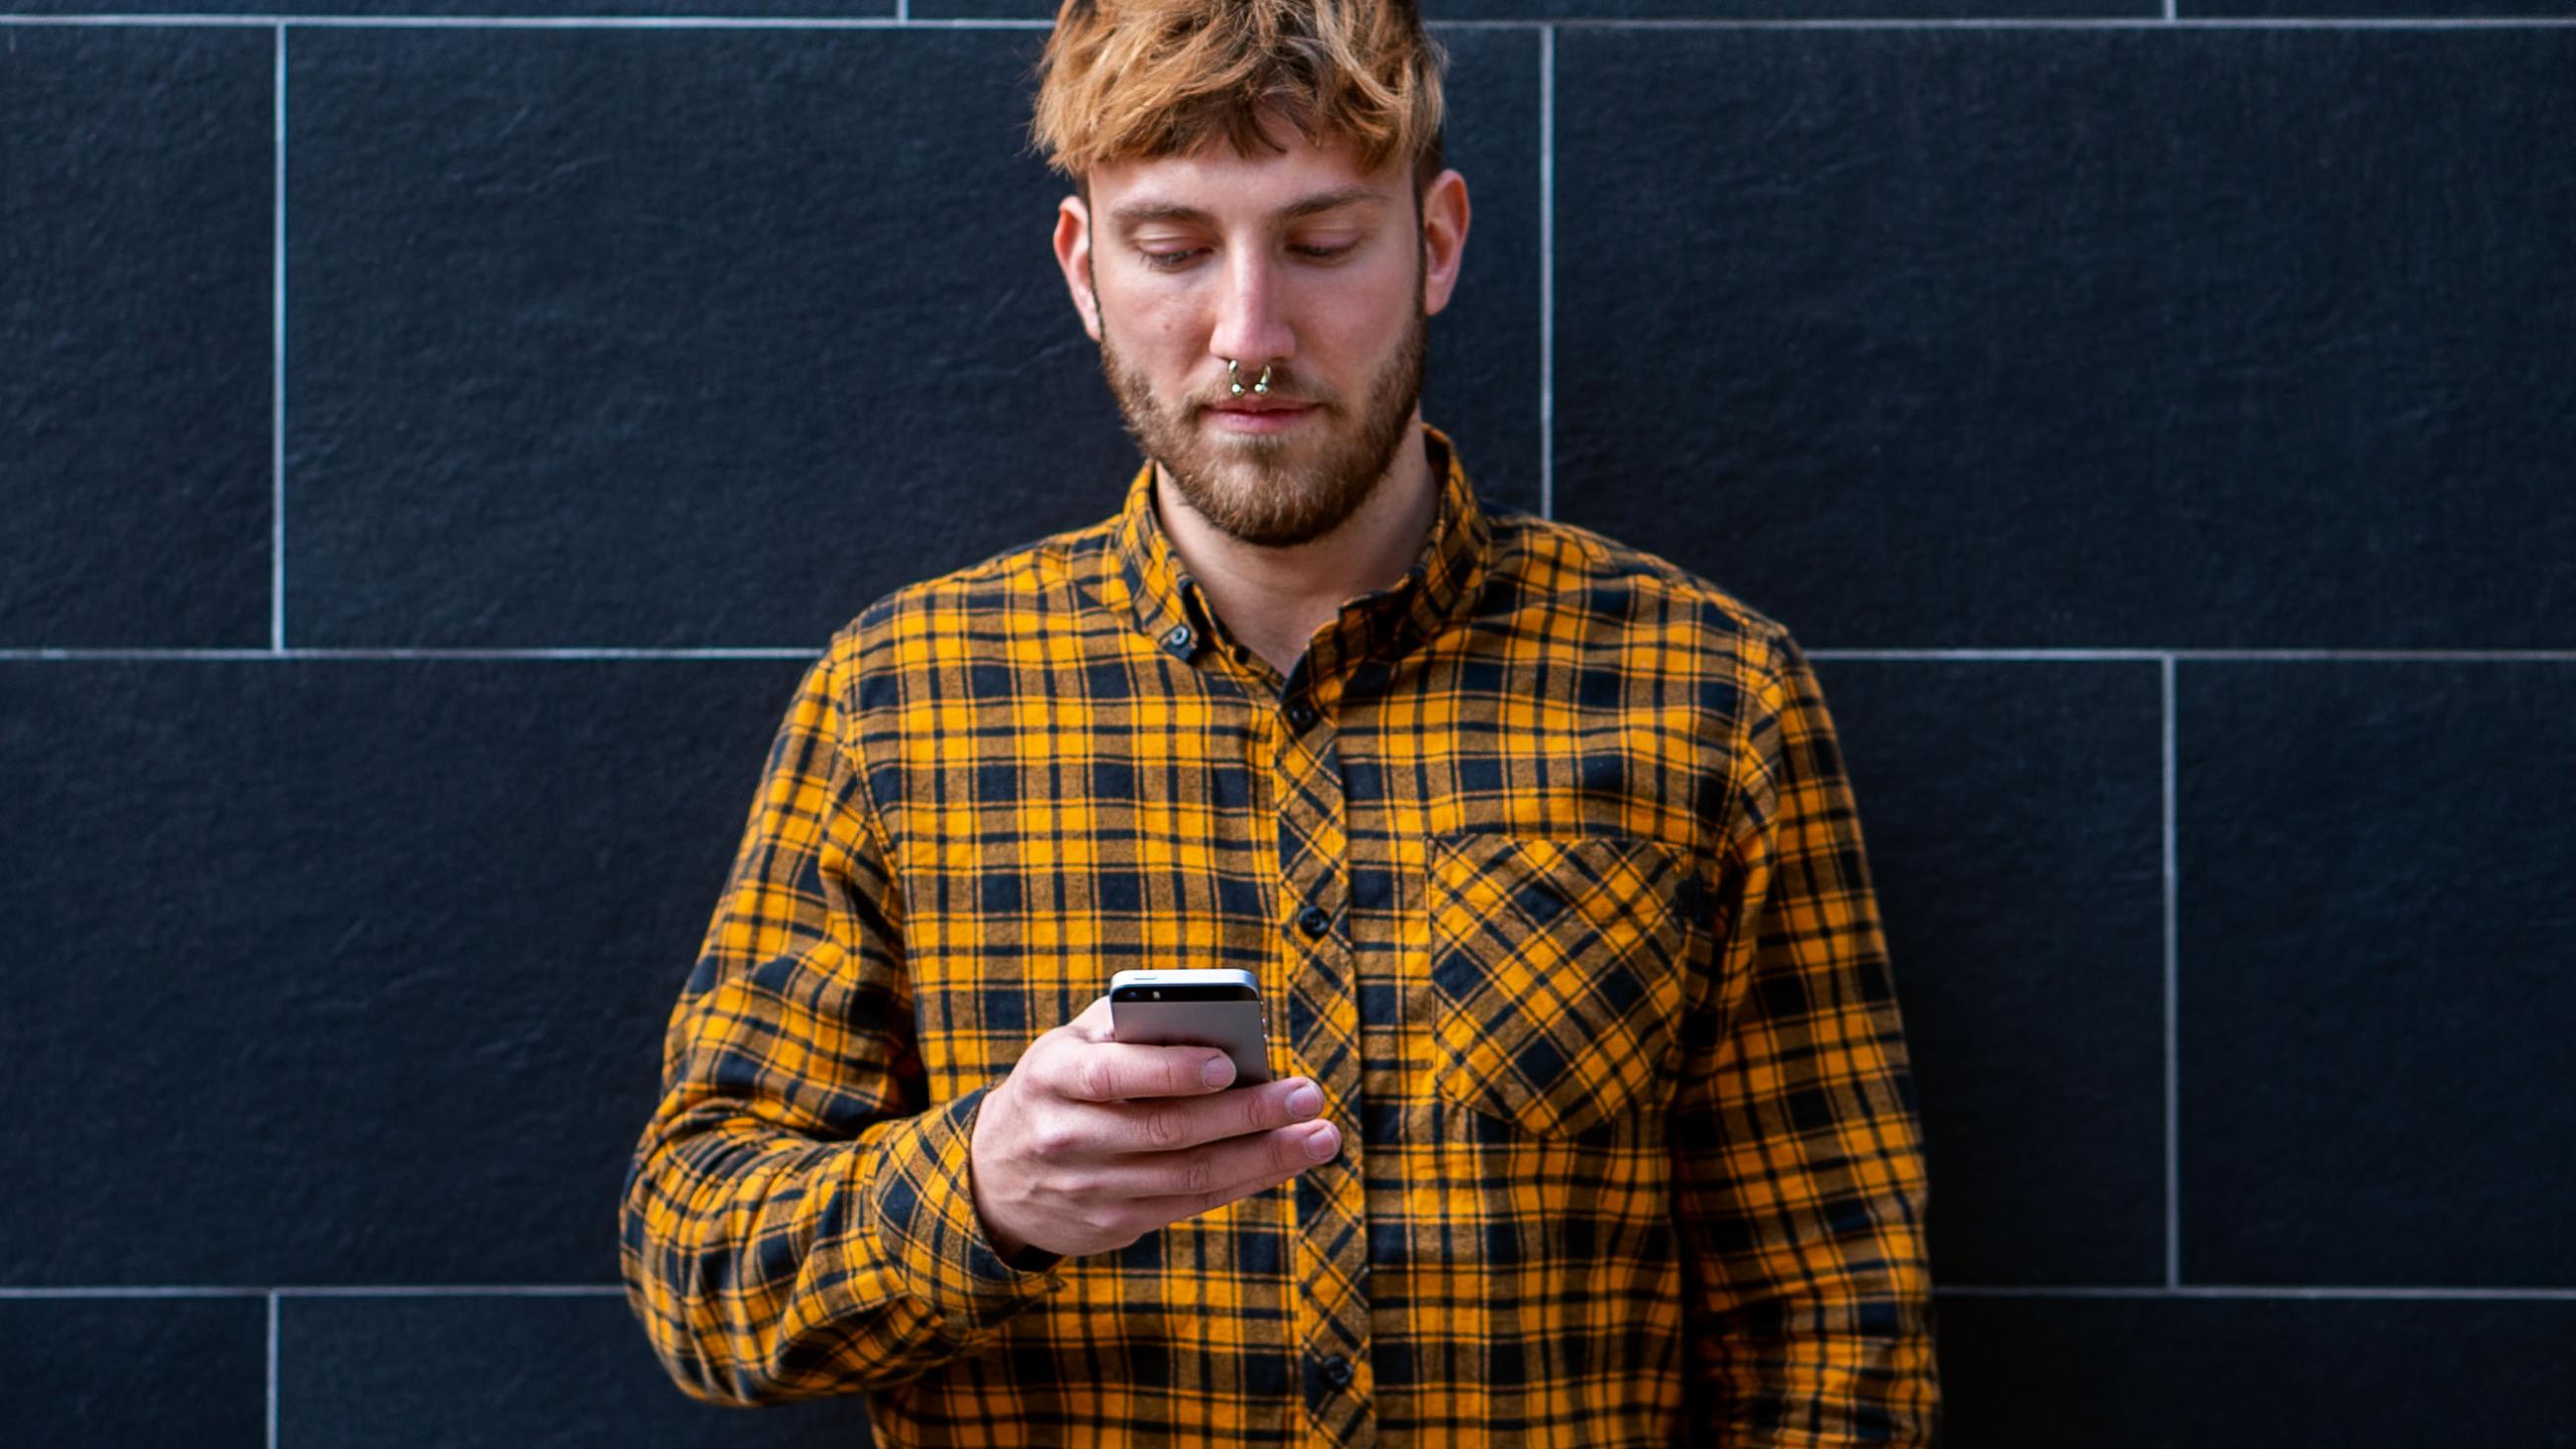 Ein Student im Karohemd steht vor einer dunklen Mauer und schaut auf ein Smartphone in seiner Hand.